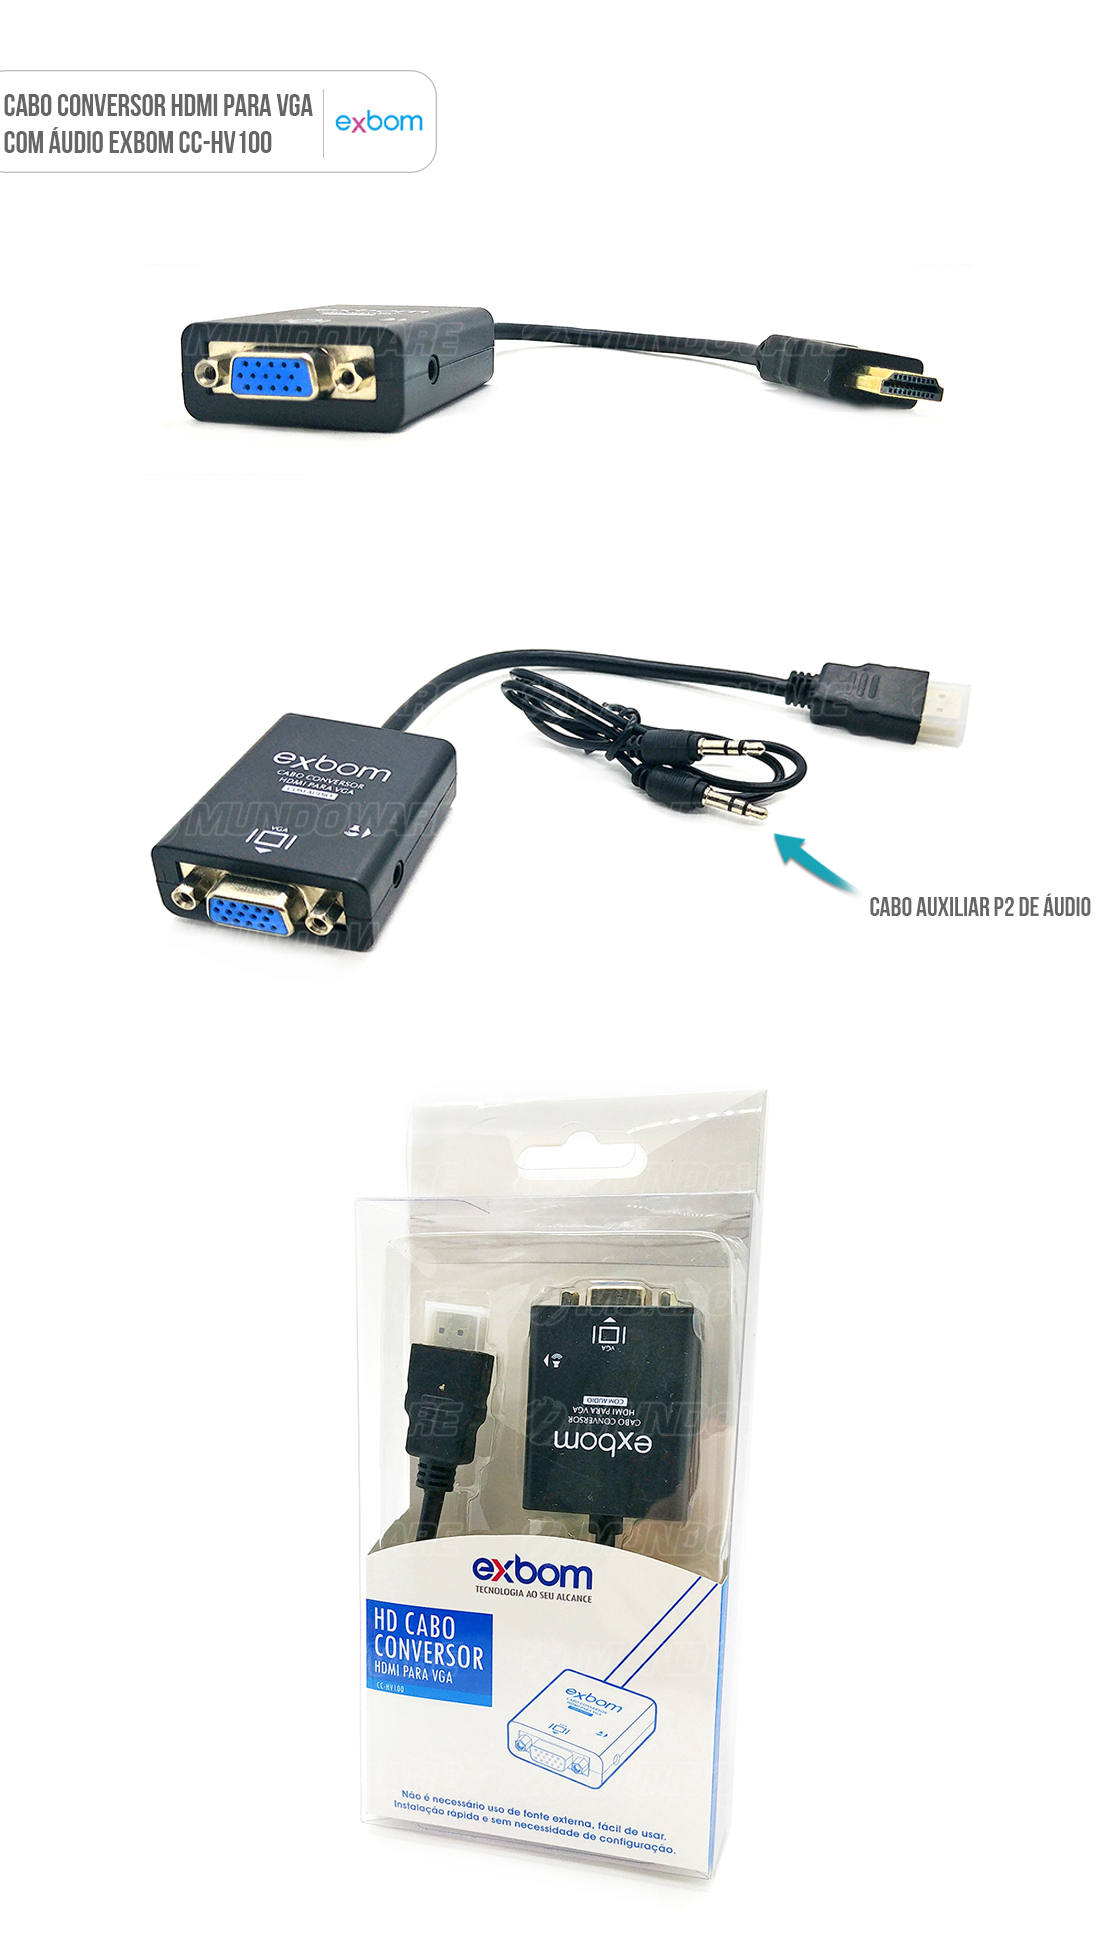 Adaptador HDMI para VGA com som exbom hva100